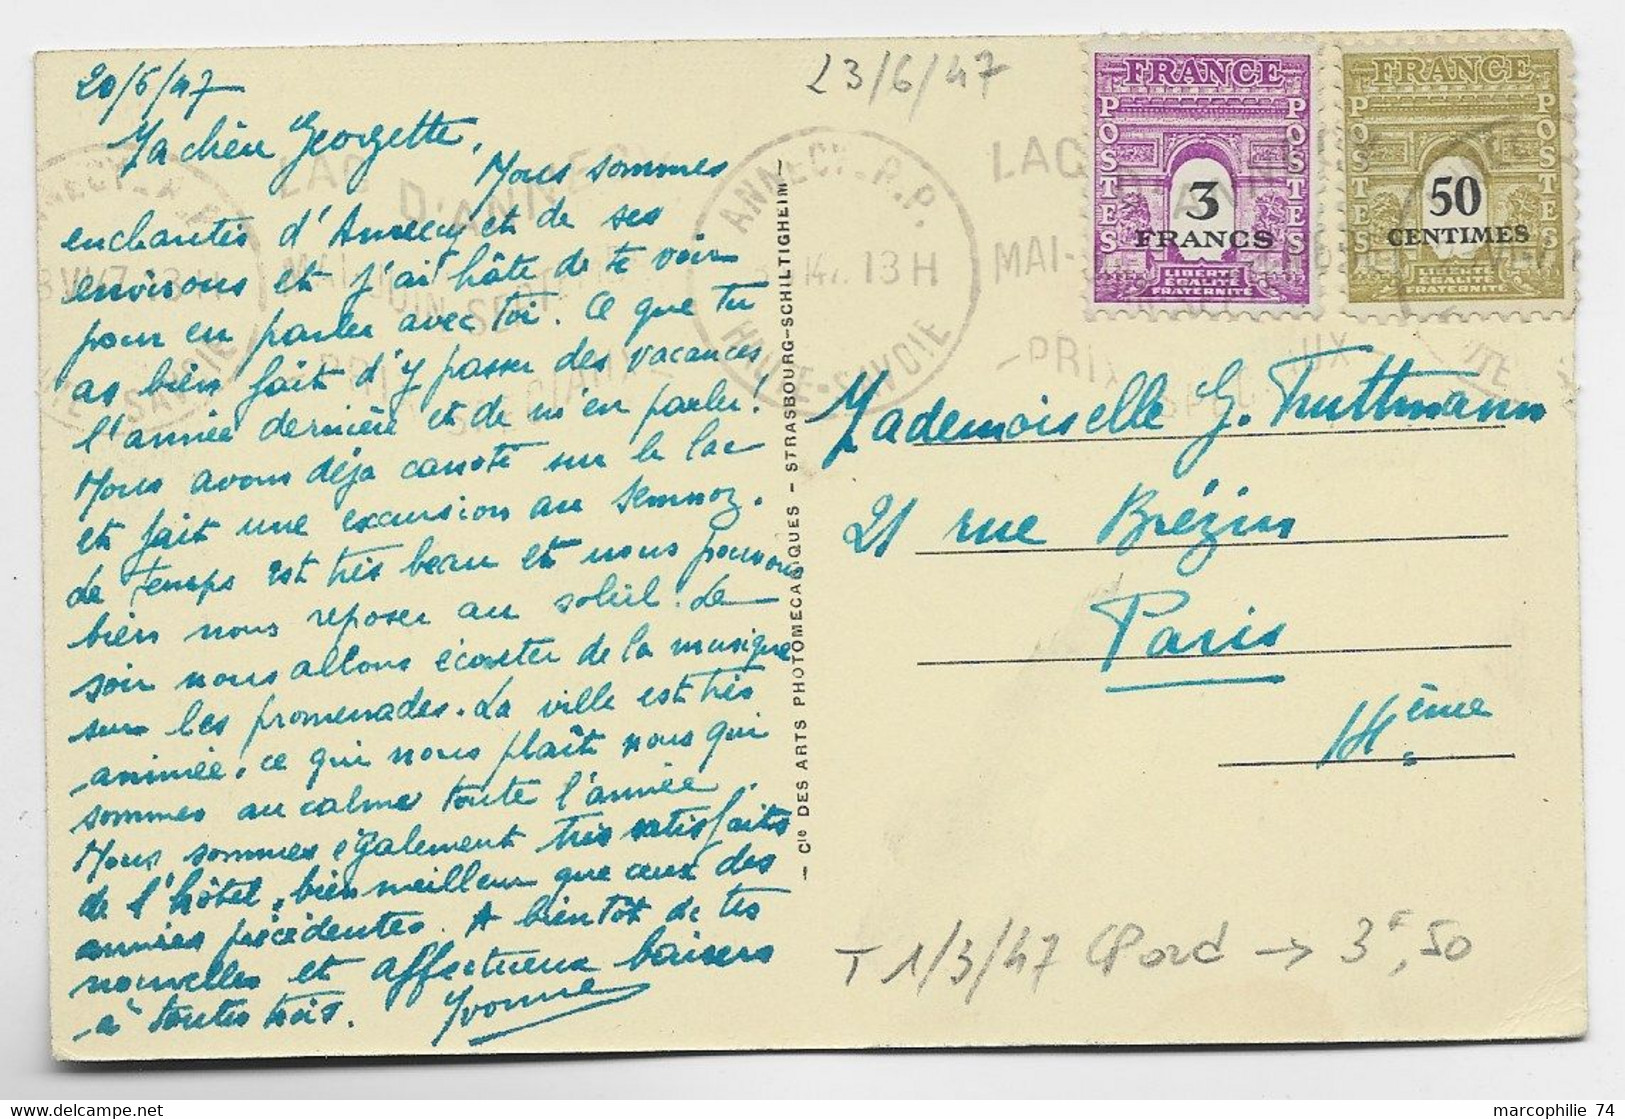 ARC TRIOMPHE 3FR+50C CARTE ANNECY RP 23.VI.1947 AU TARIF - 1944-45 Arc De Triomphe